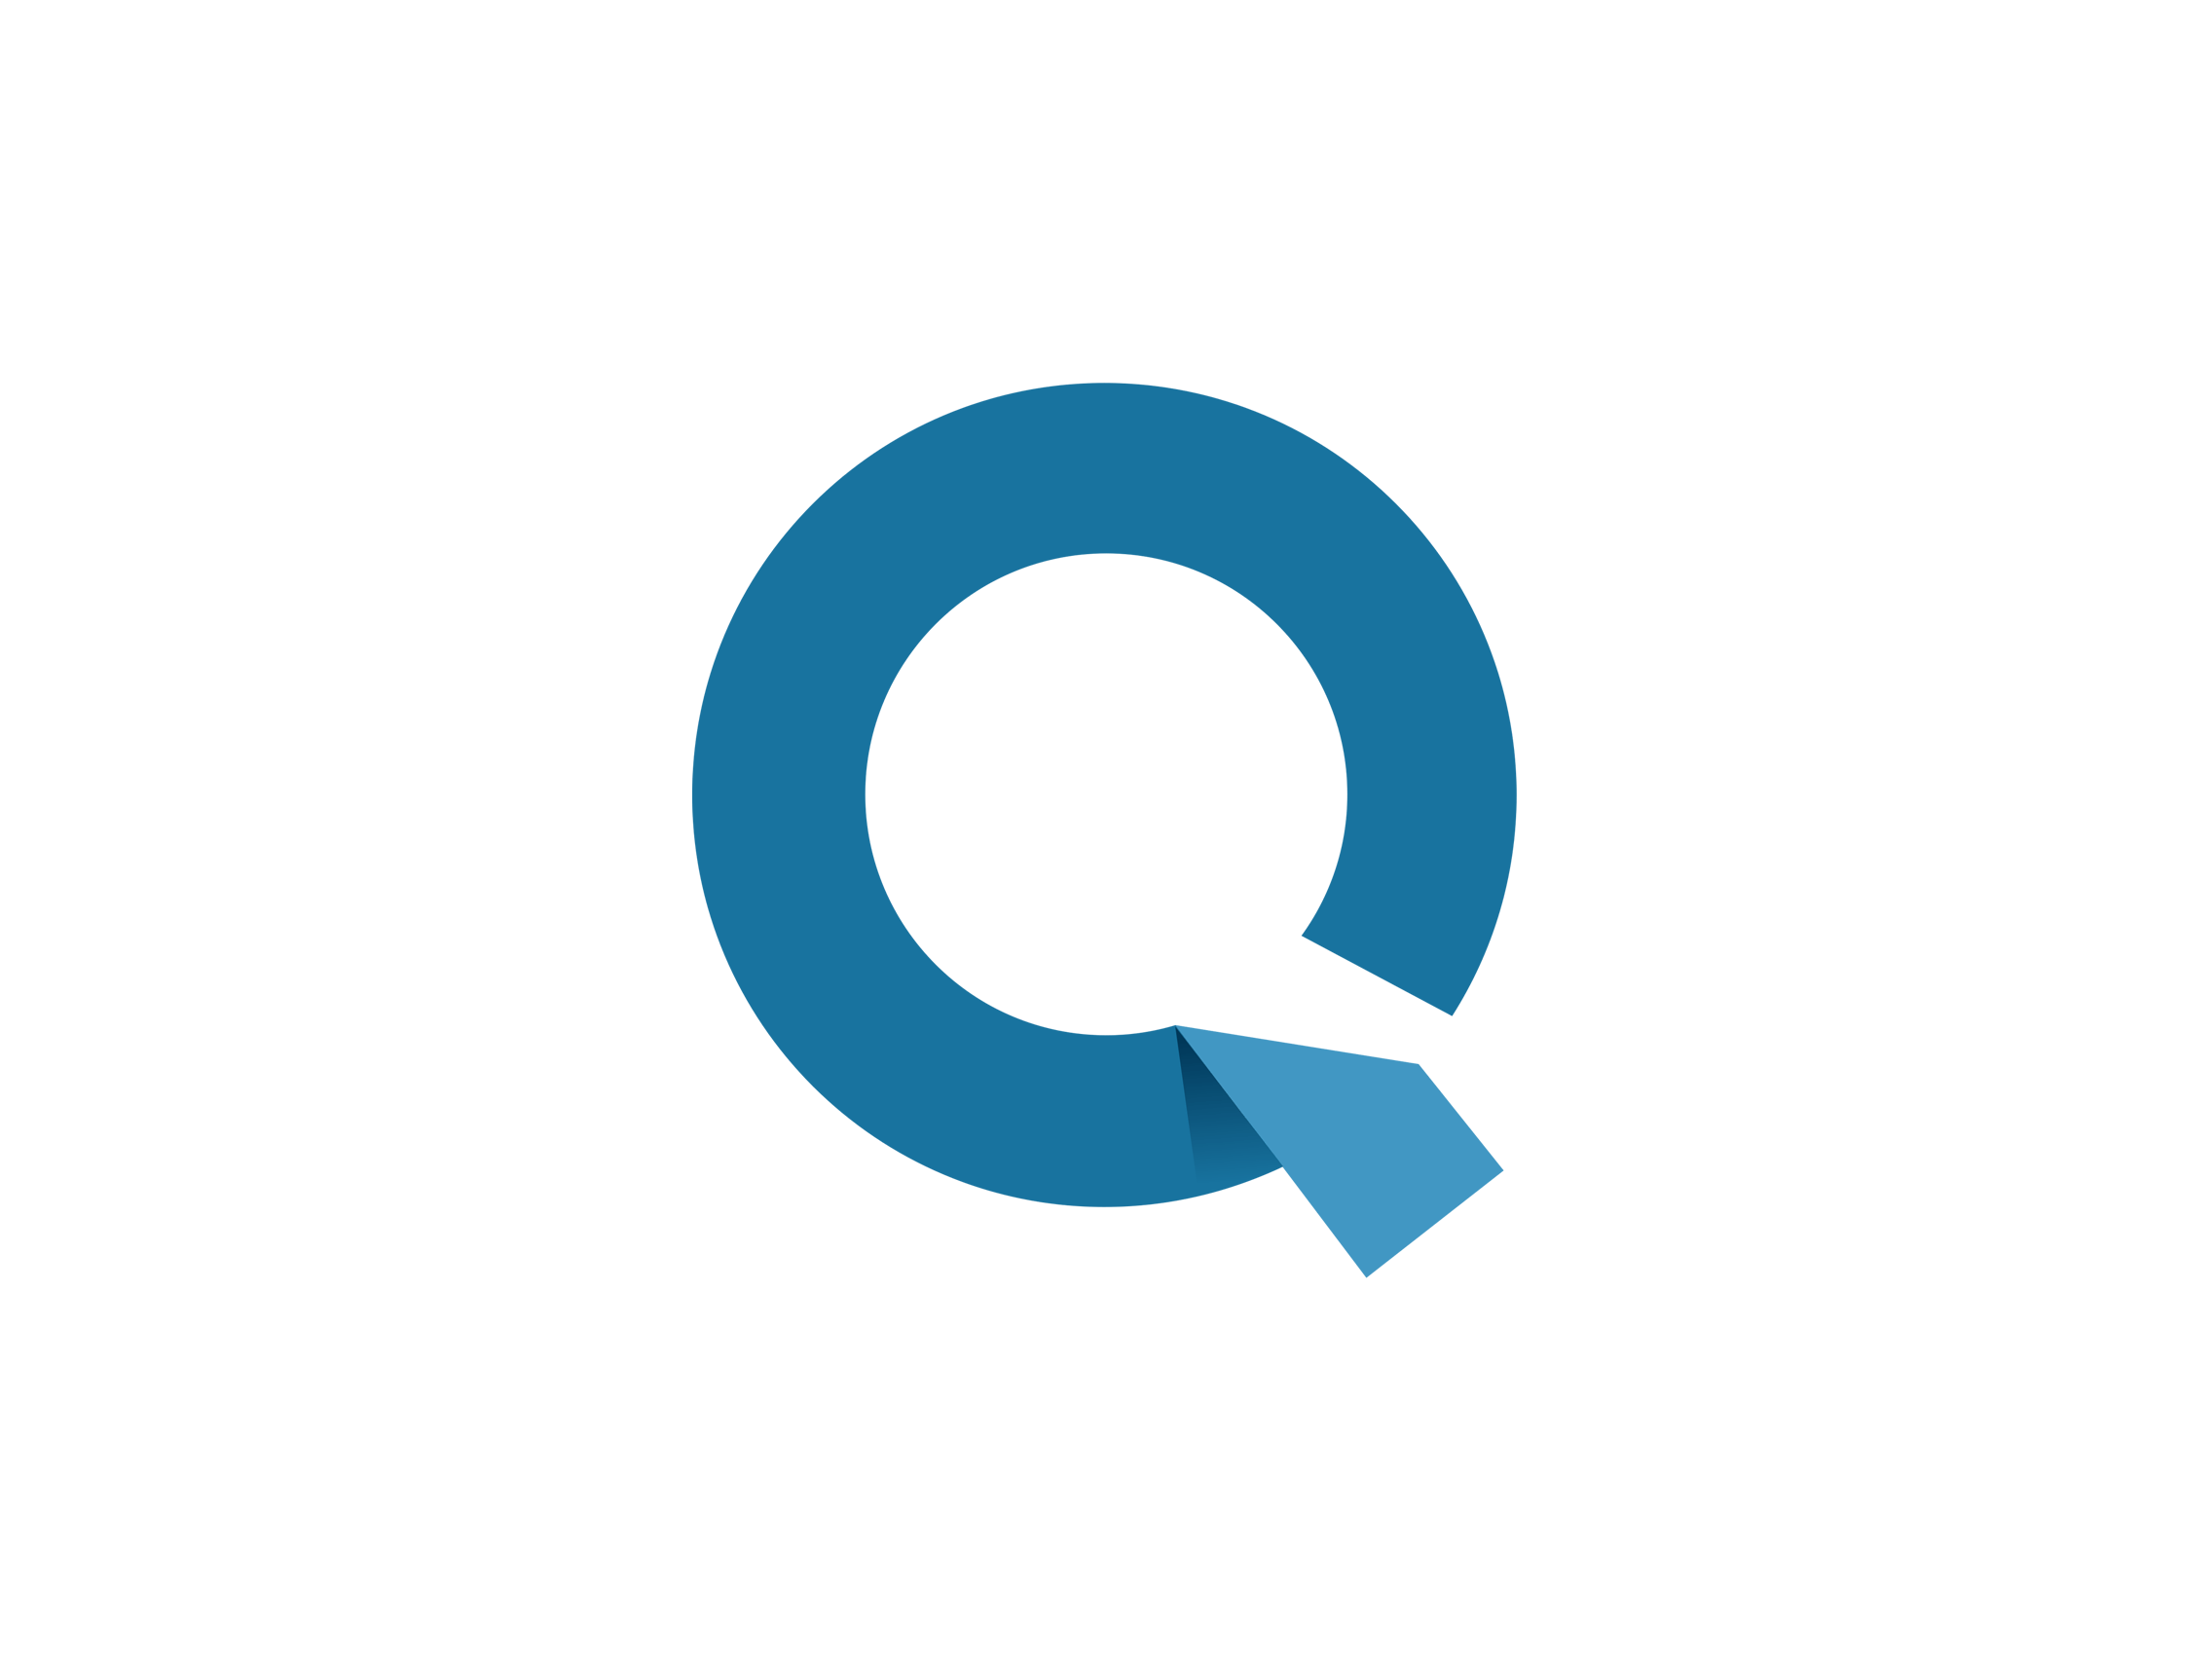 What Has a Blue Q Logo - Q Logos